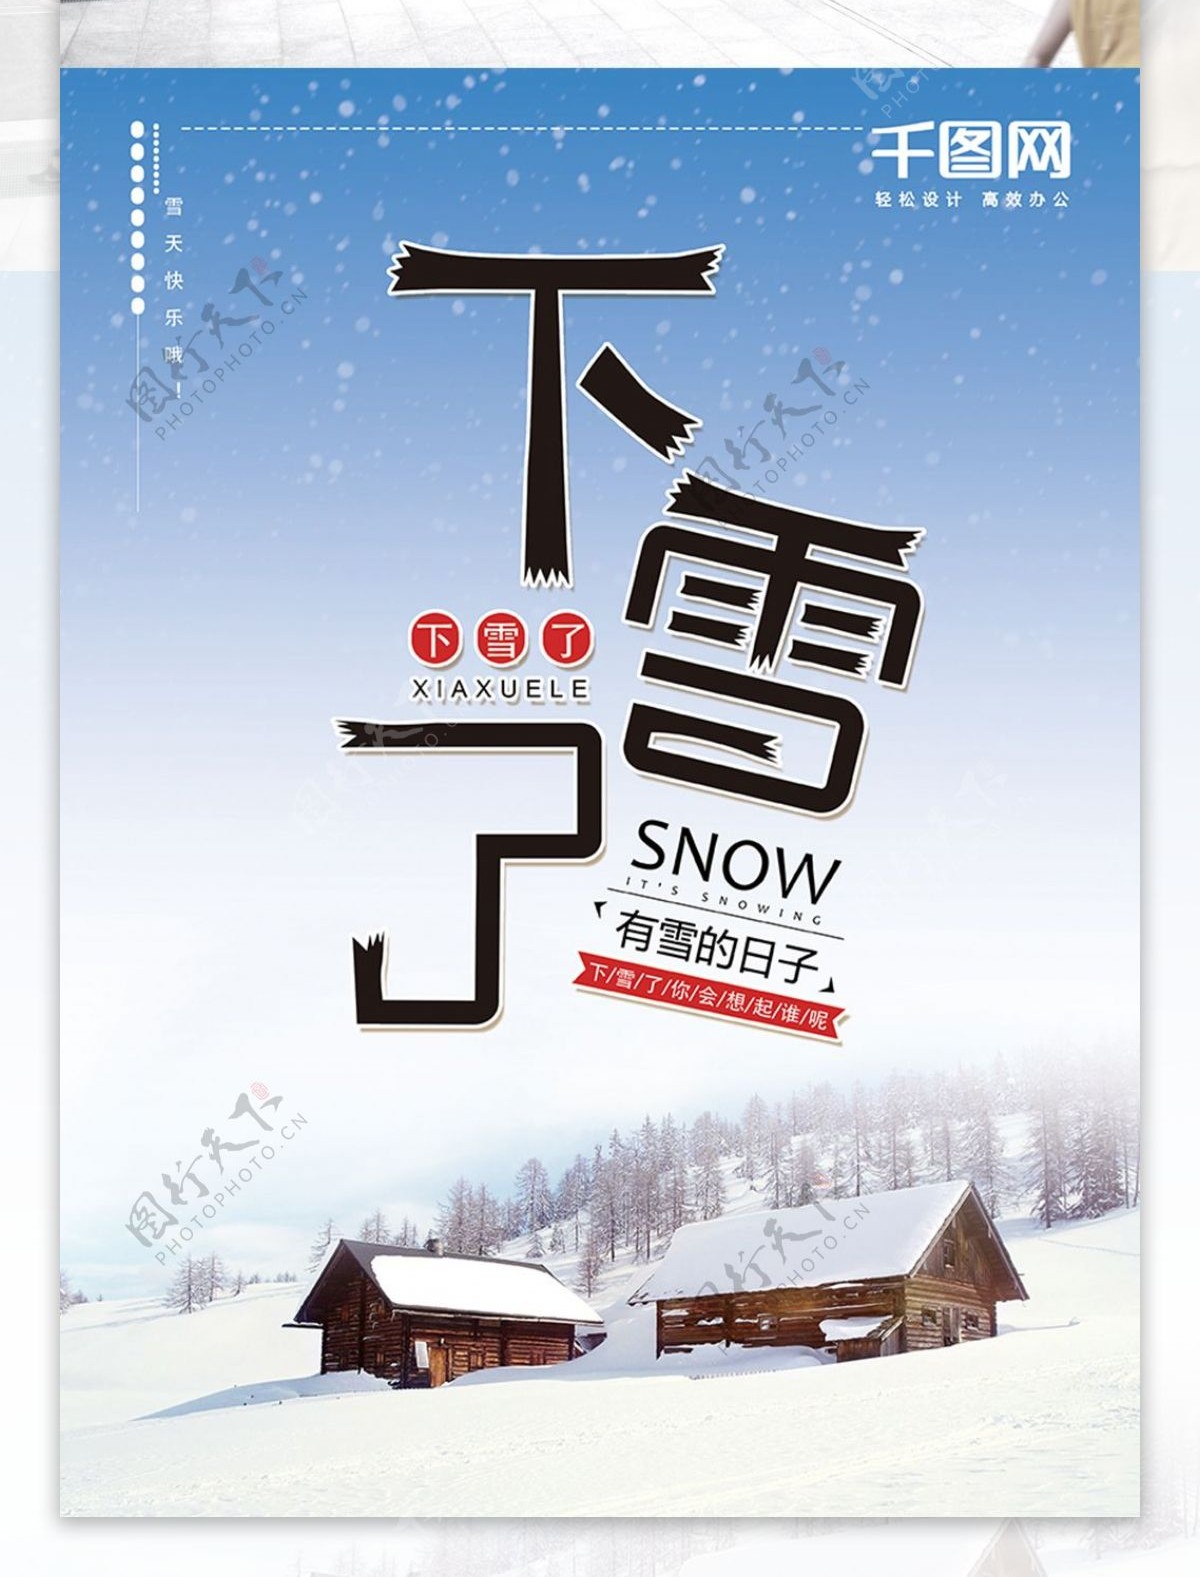 下雪了蓝色清新简约节日海报